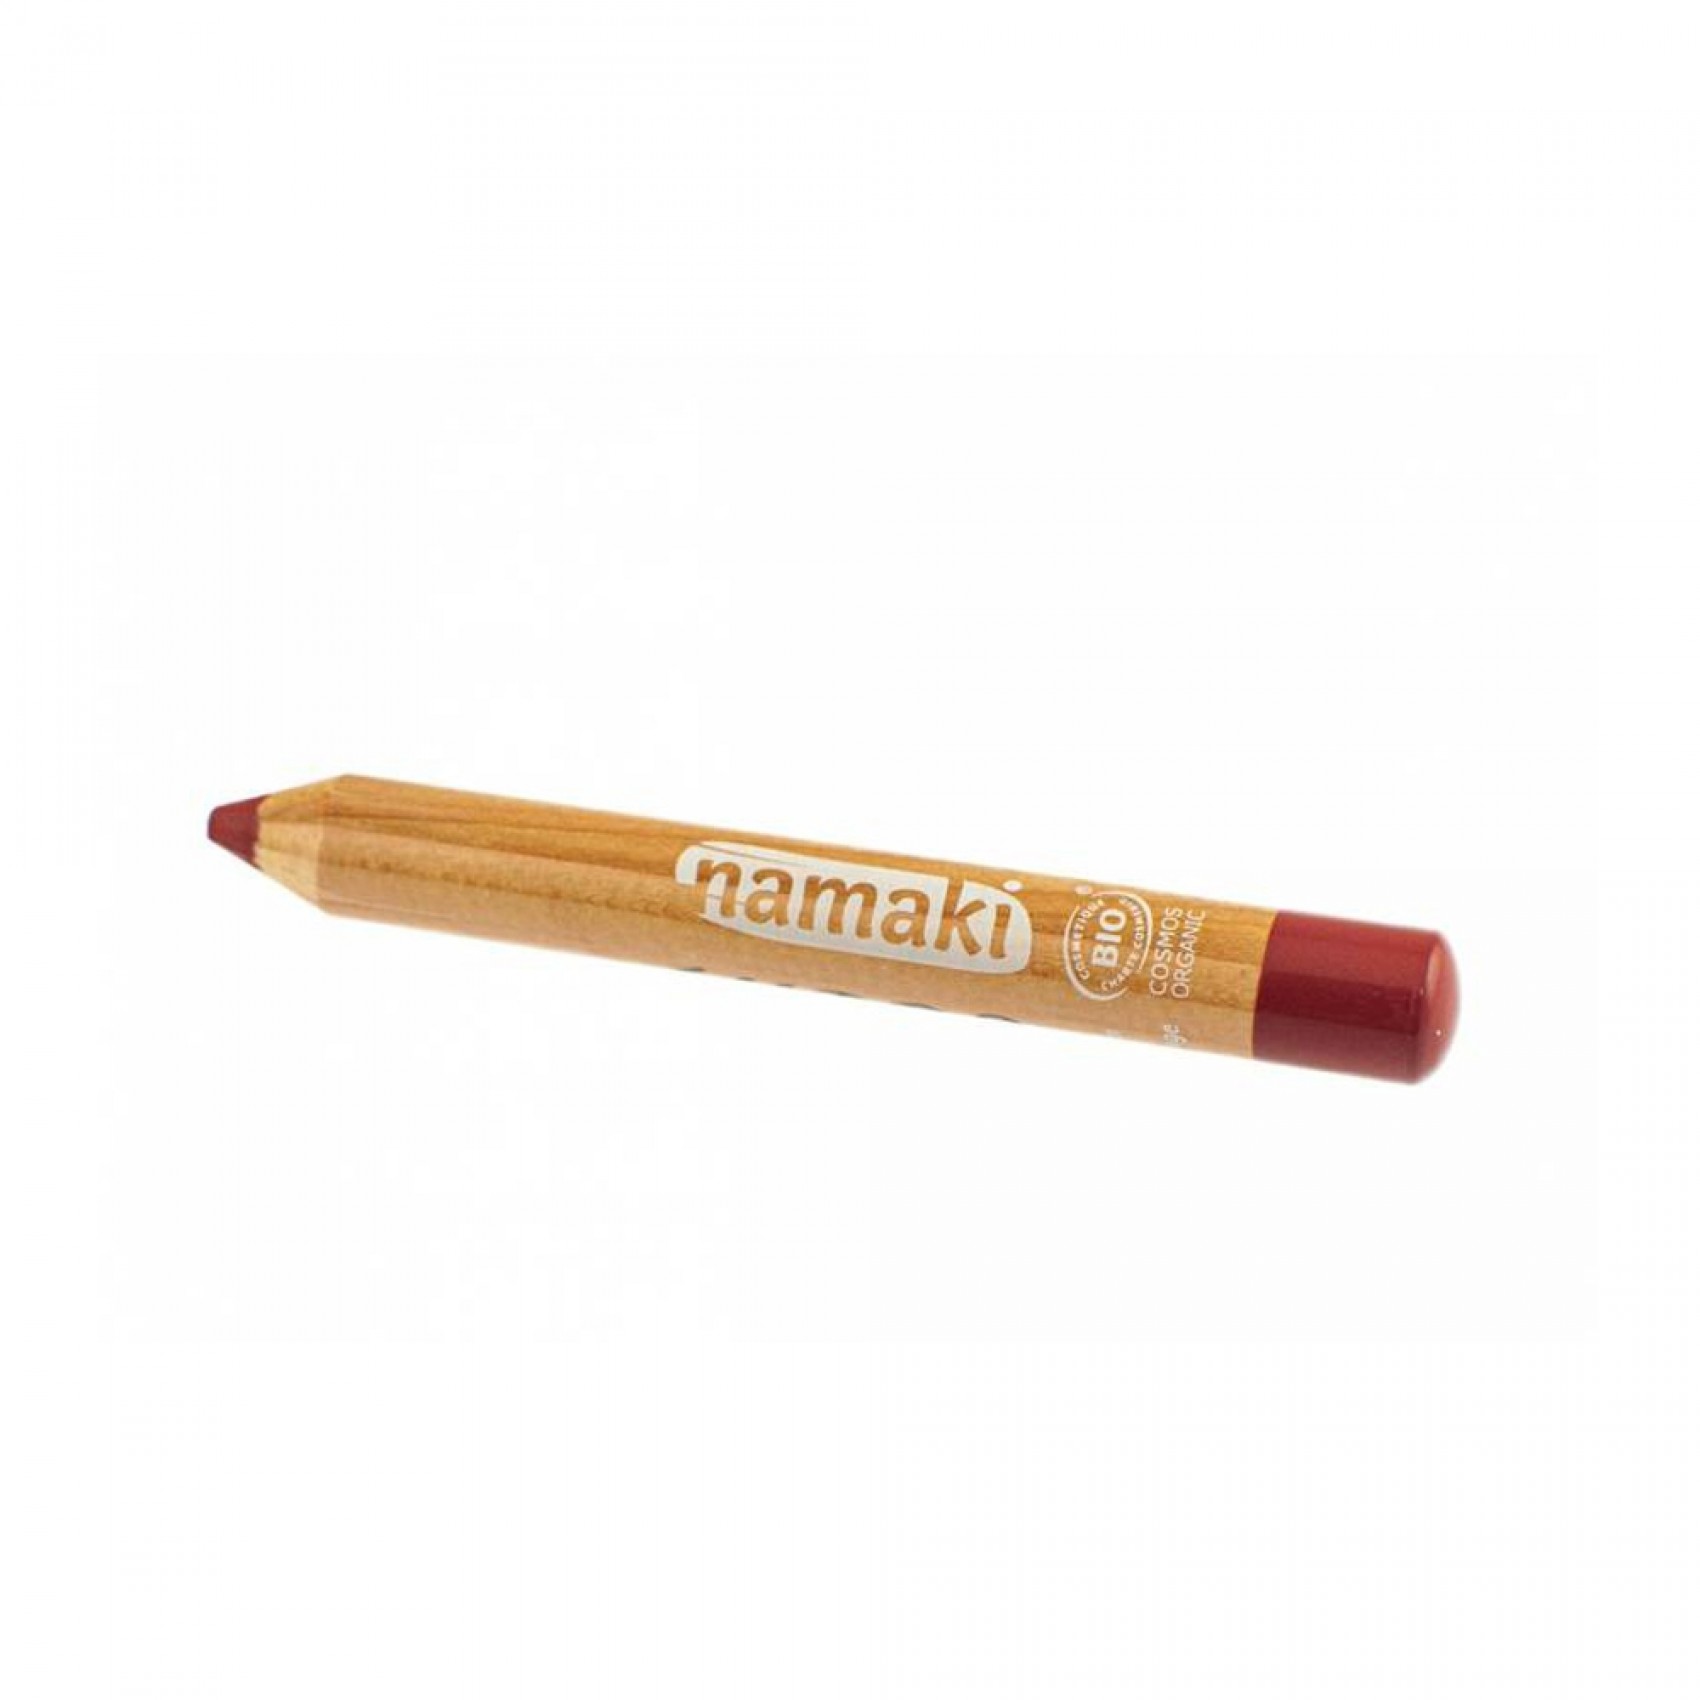 Kit de 6 crayons de maquillage BIO Mondes Enchantés Namaki